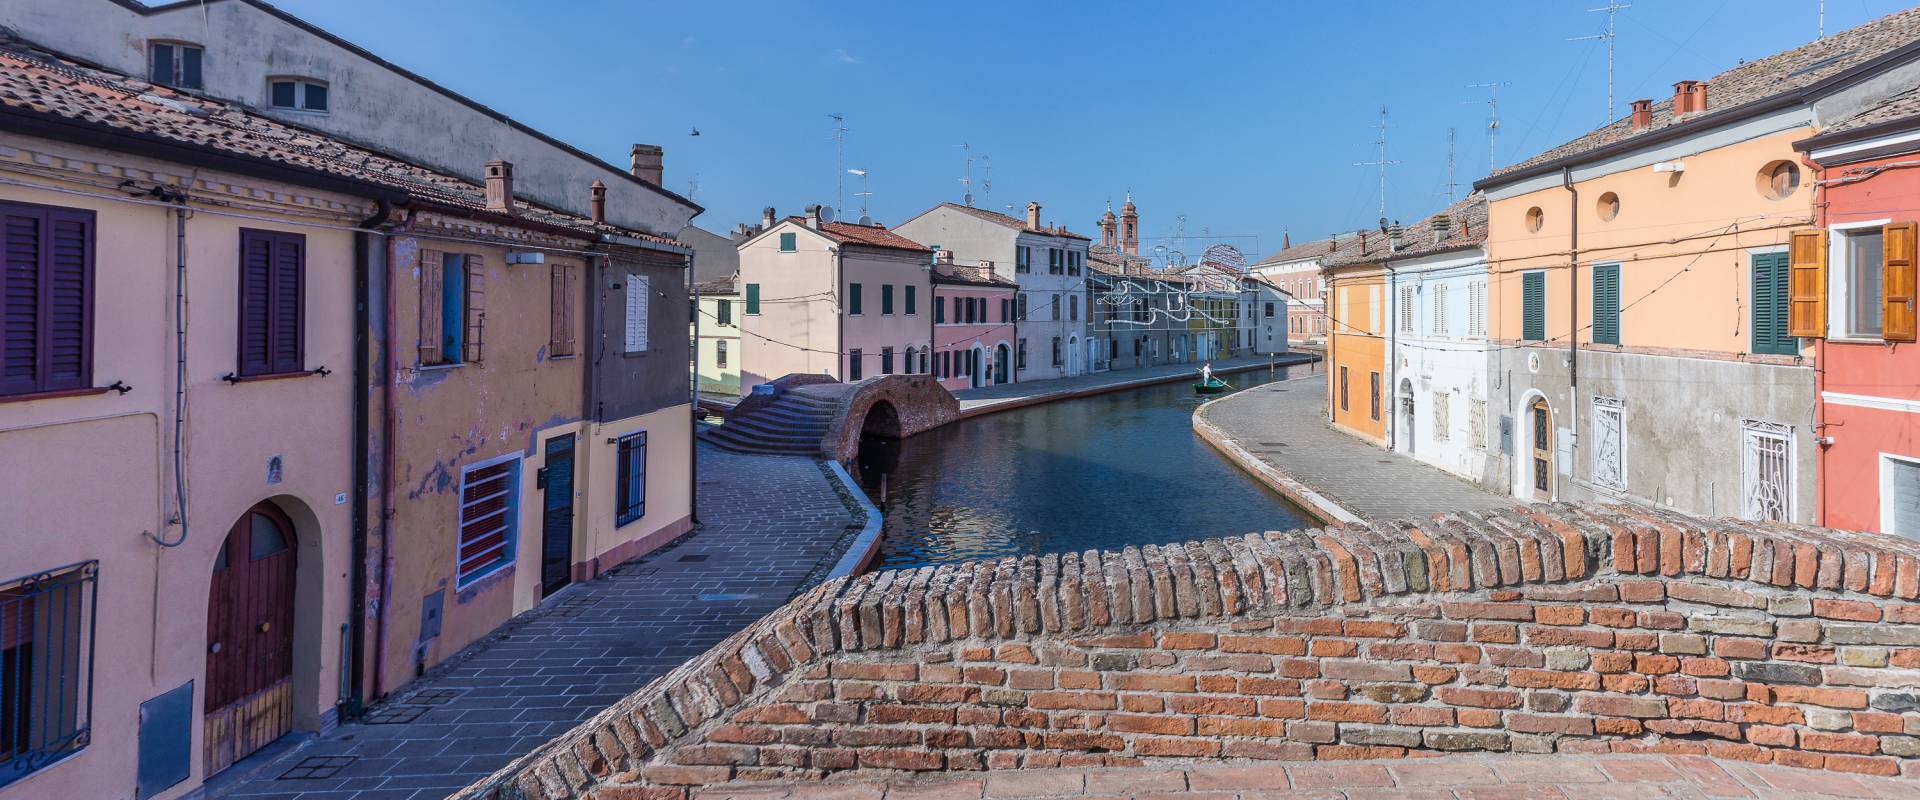 Centro storico di Comacchio - Ponte dei Sisti foto di Vanni Lazzari